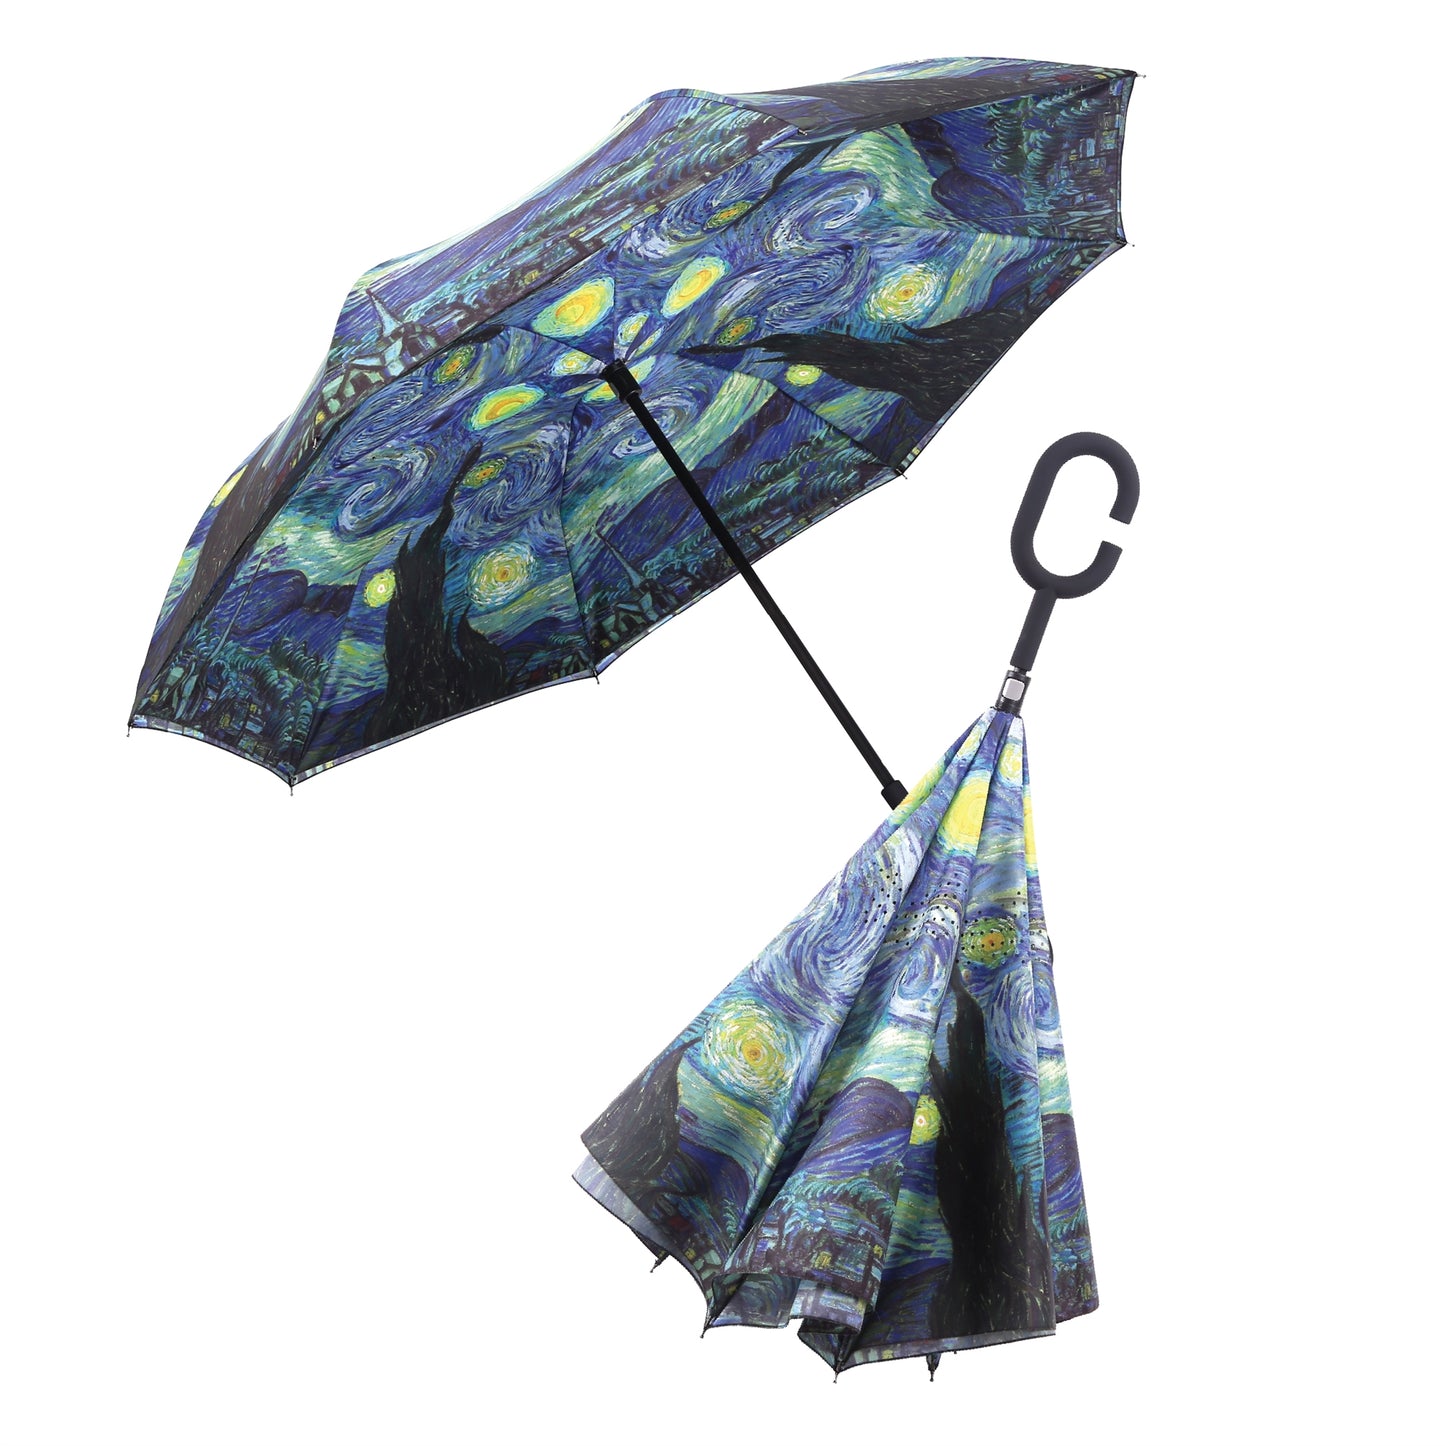 Paraguas inverso: La noche estrellada de Vincent van Gogh